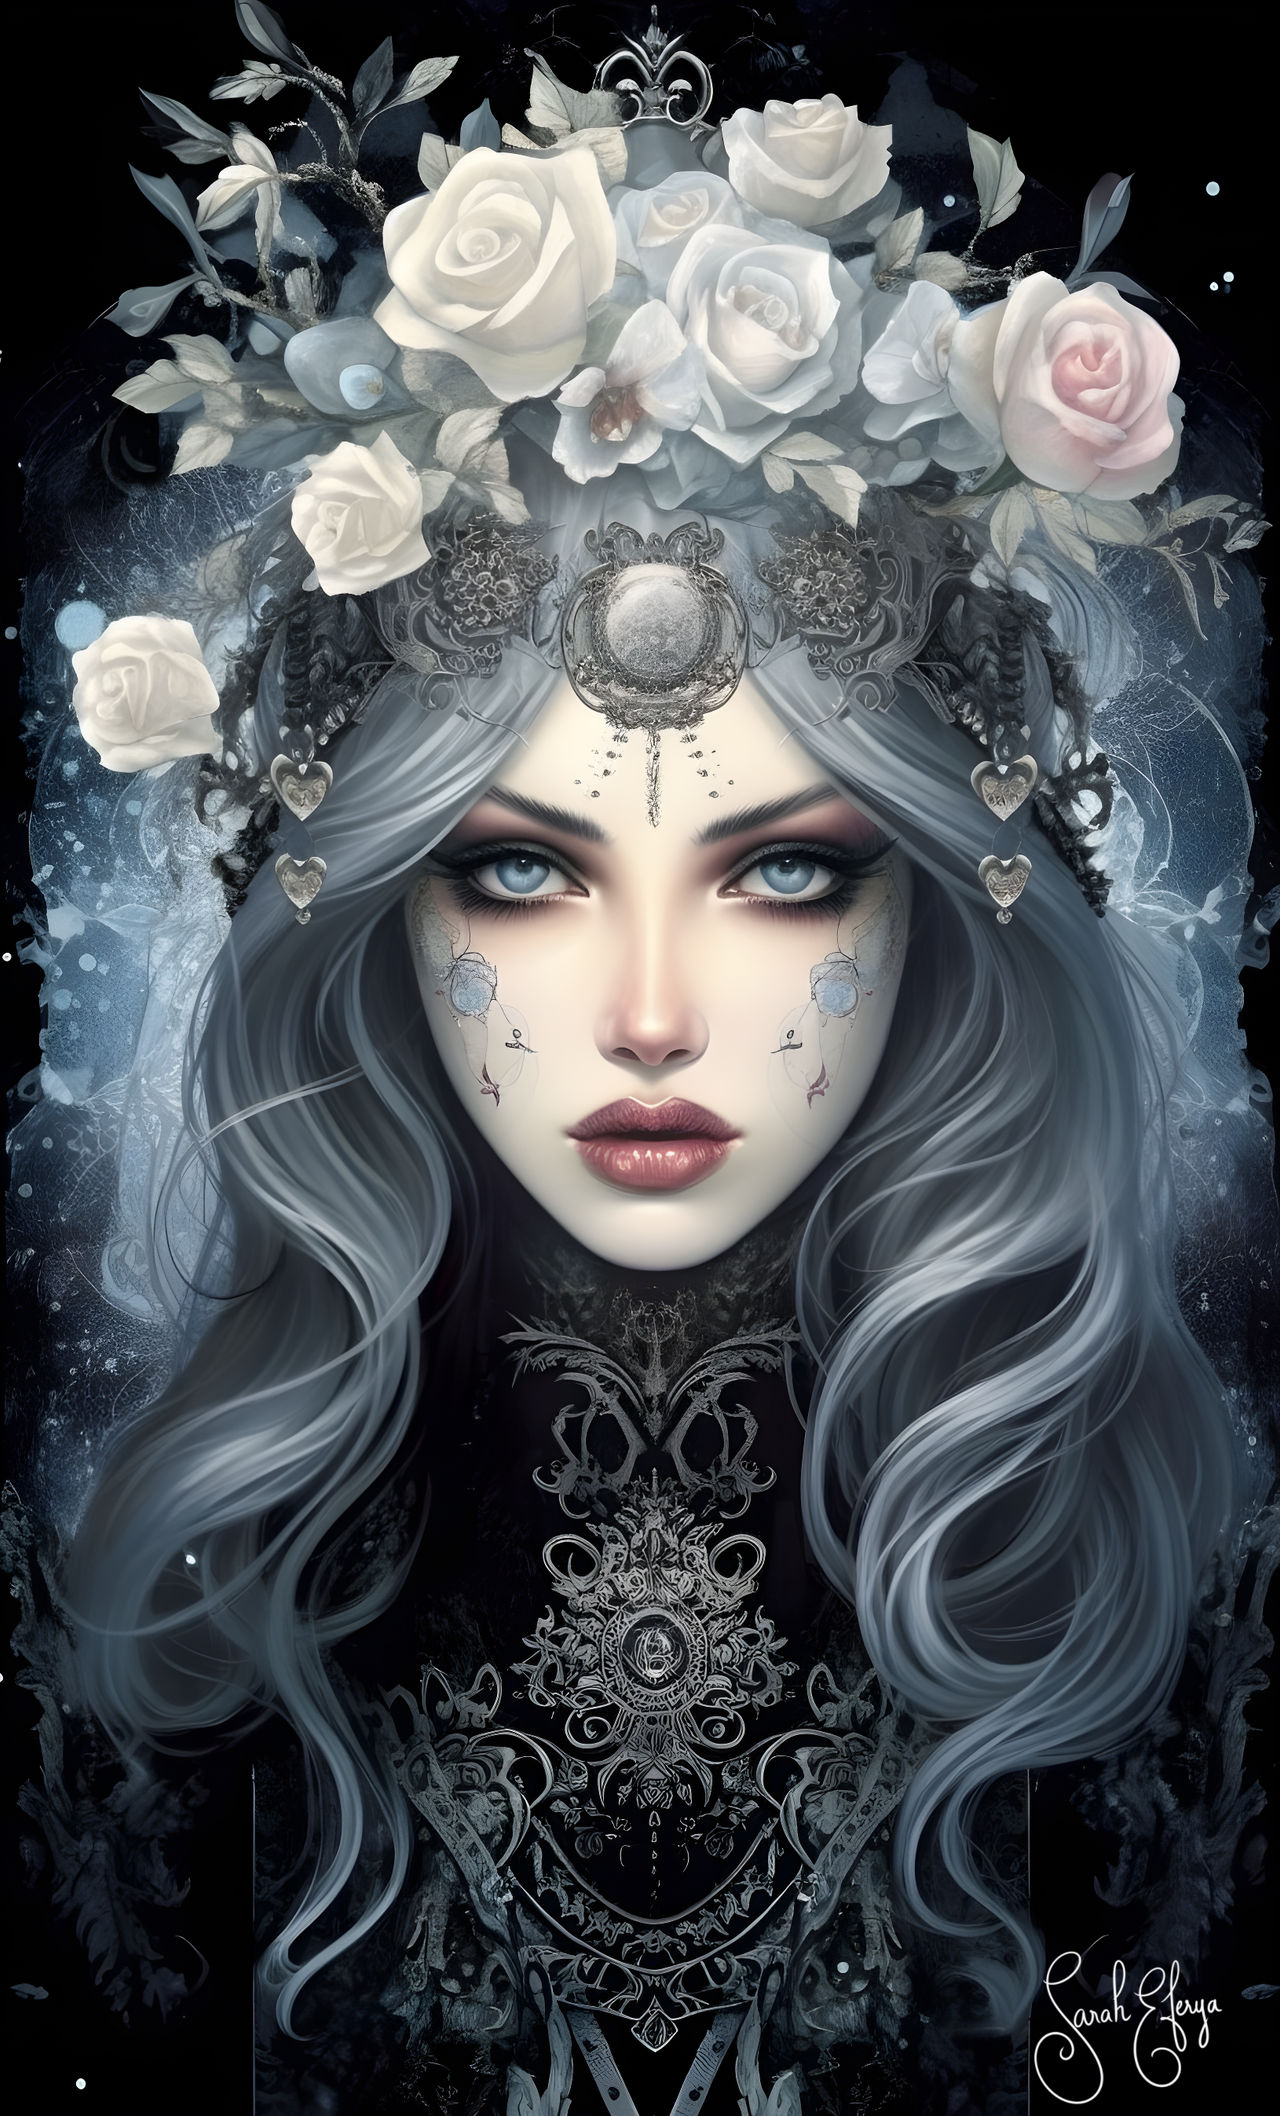 The Gothic Queen by saraheferya on DeviantArt